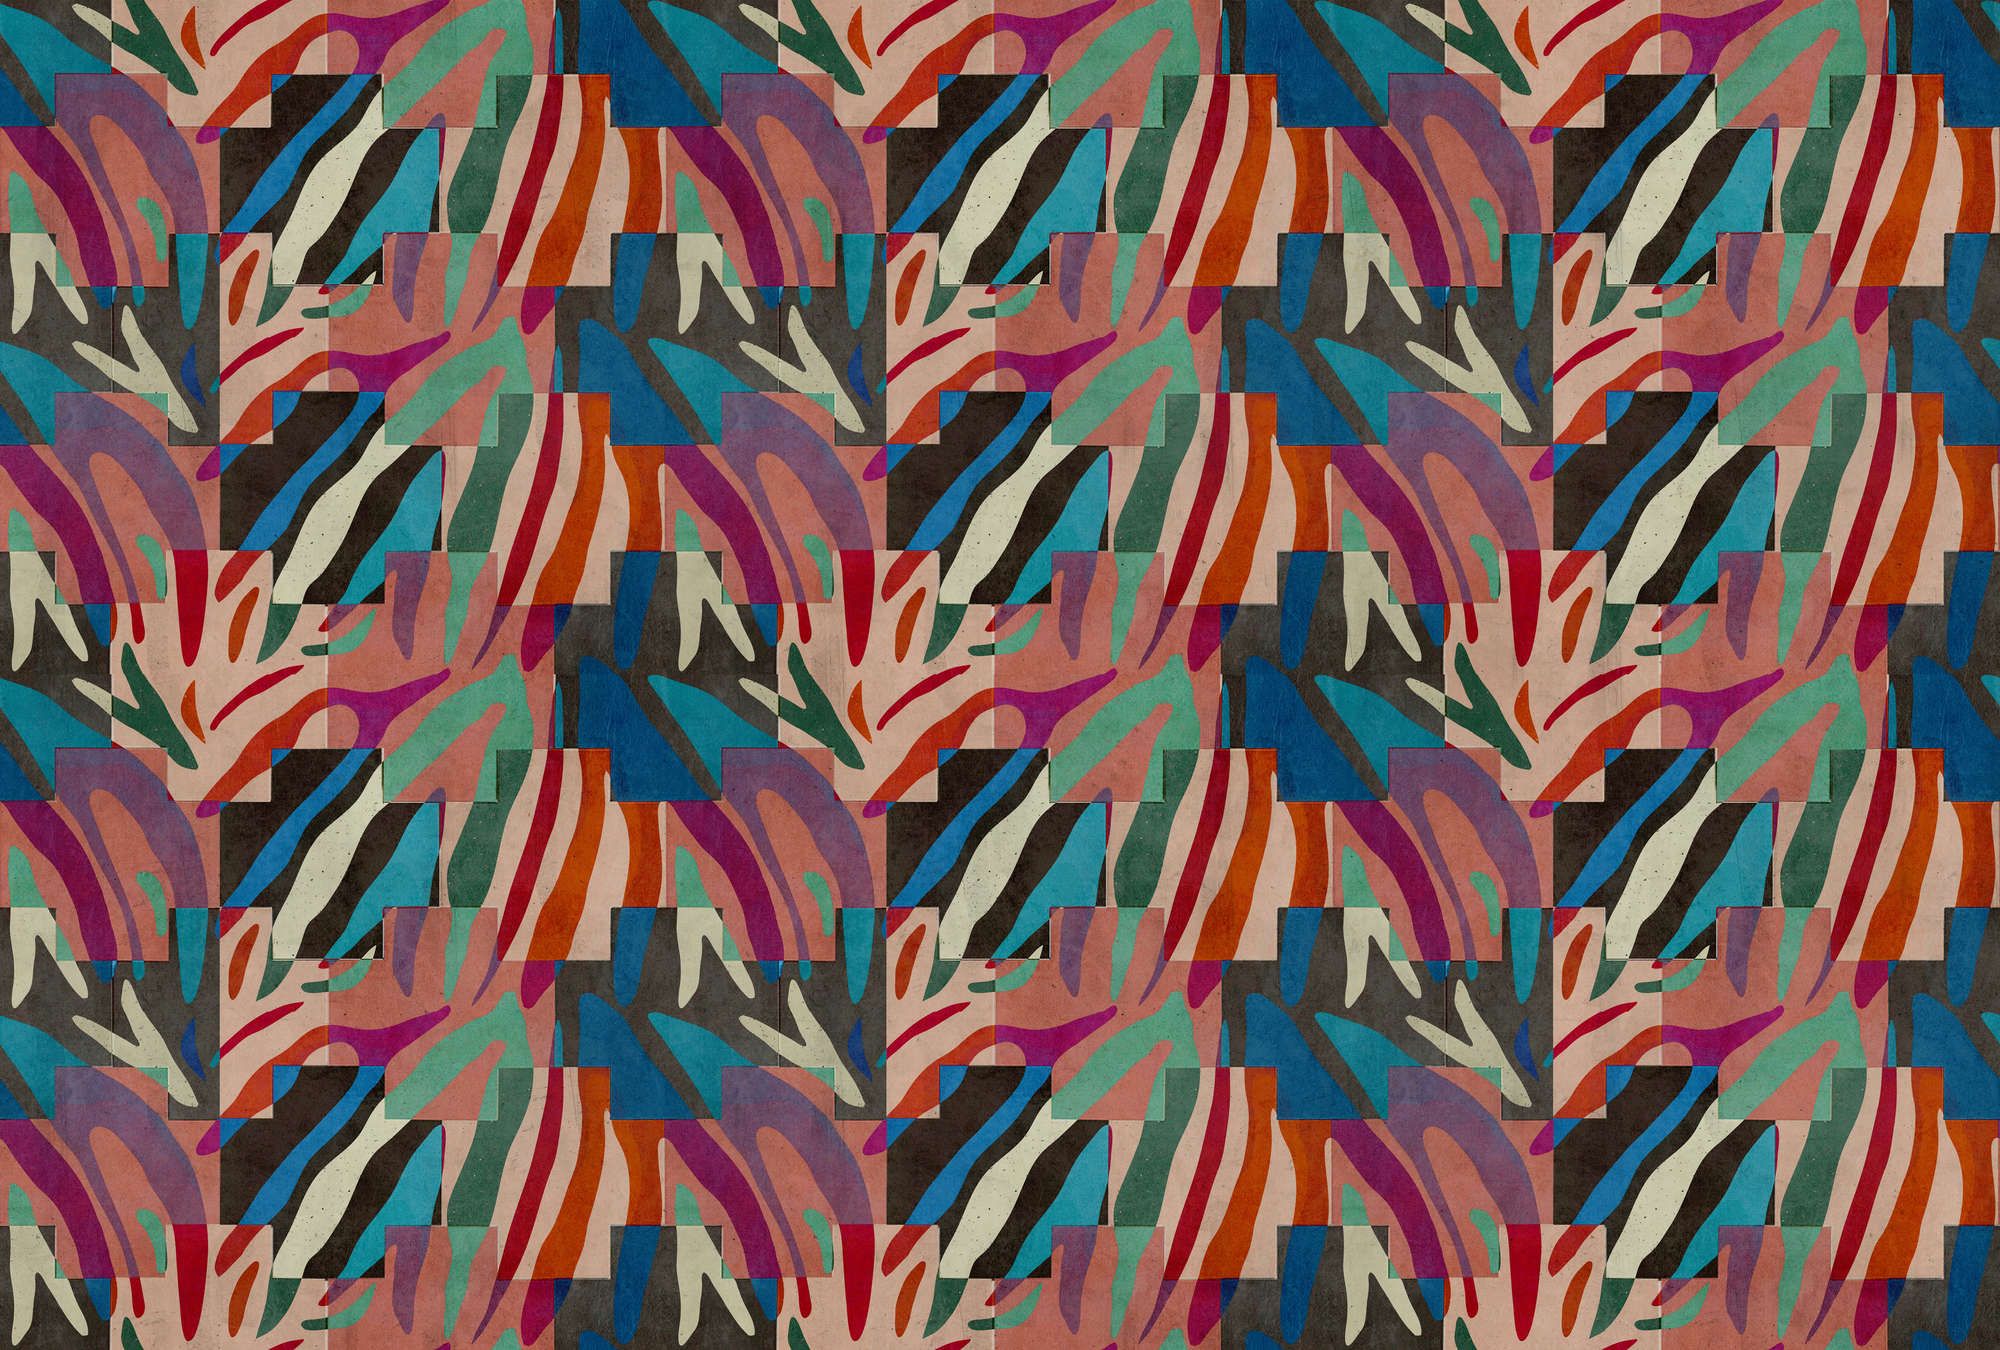             Fotomural »ettore« - Diseño abstracto colorido delante de estructura de yeso de hormigón - Tela no tejida mate, lisa
        